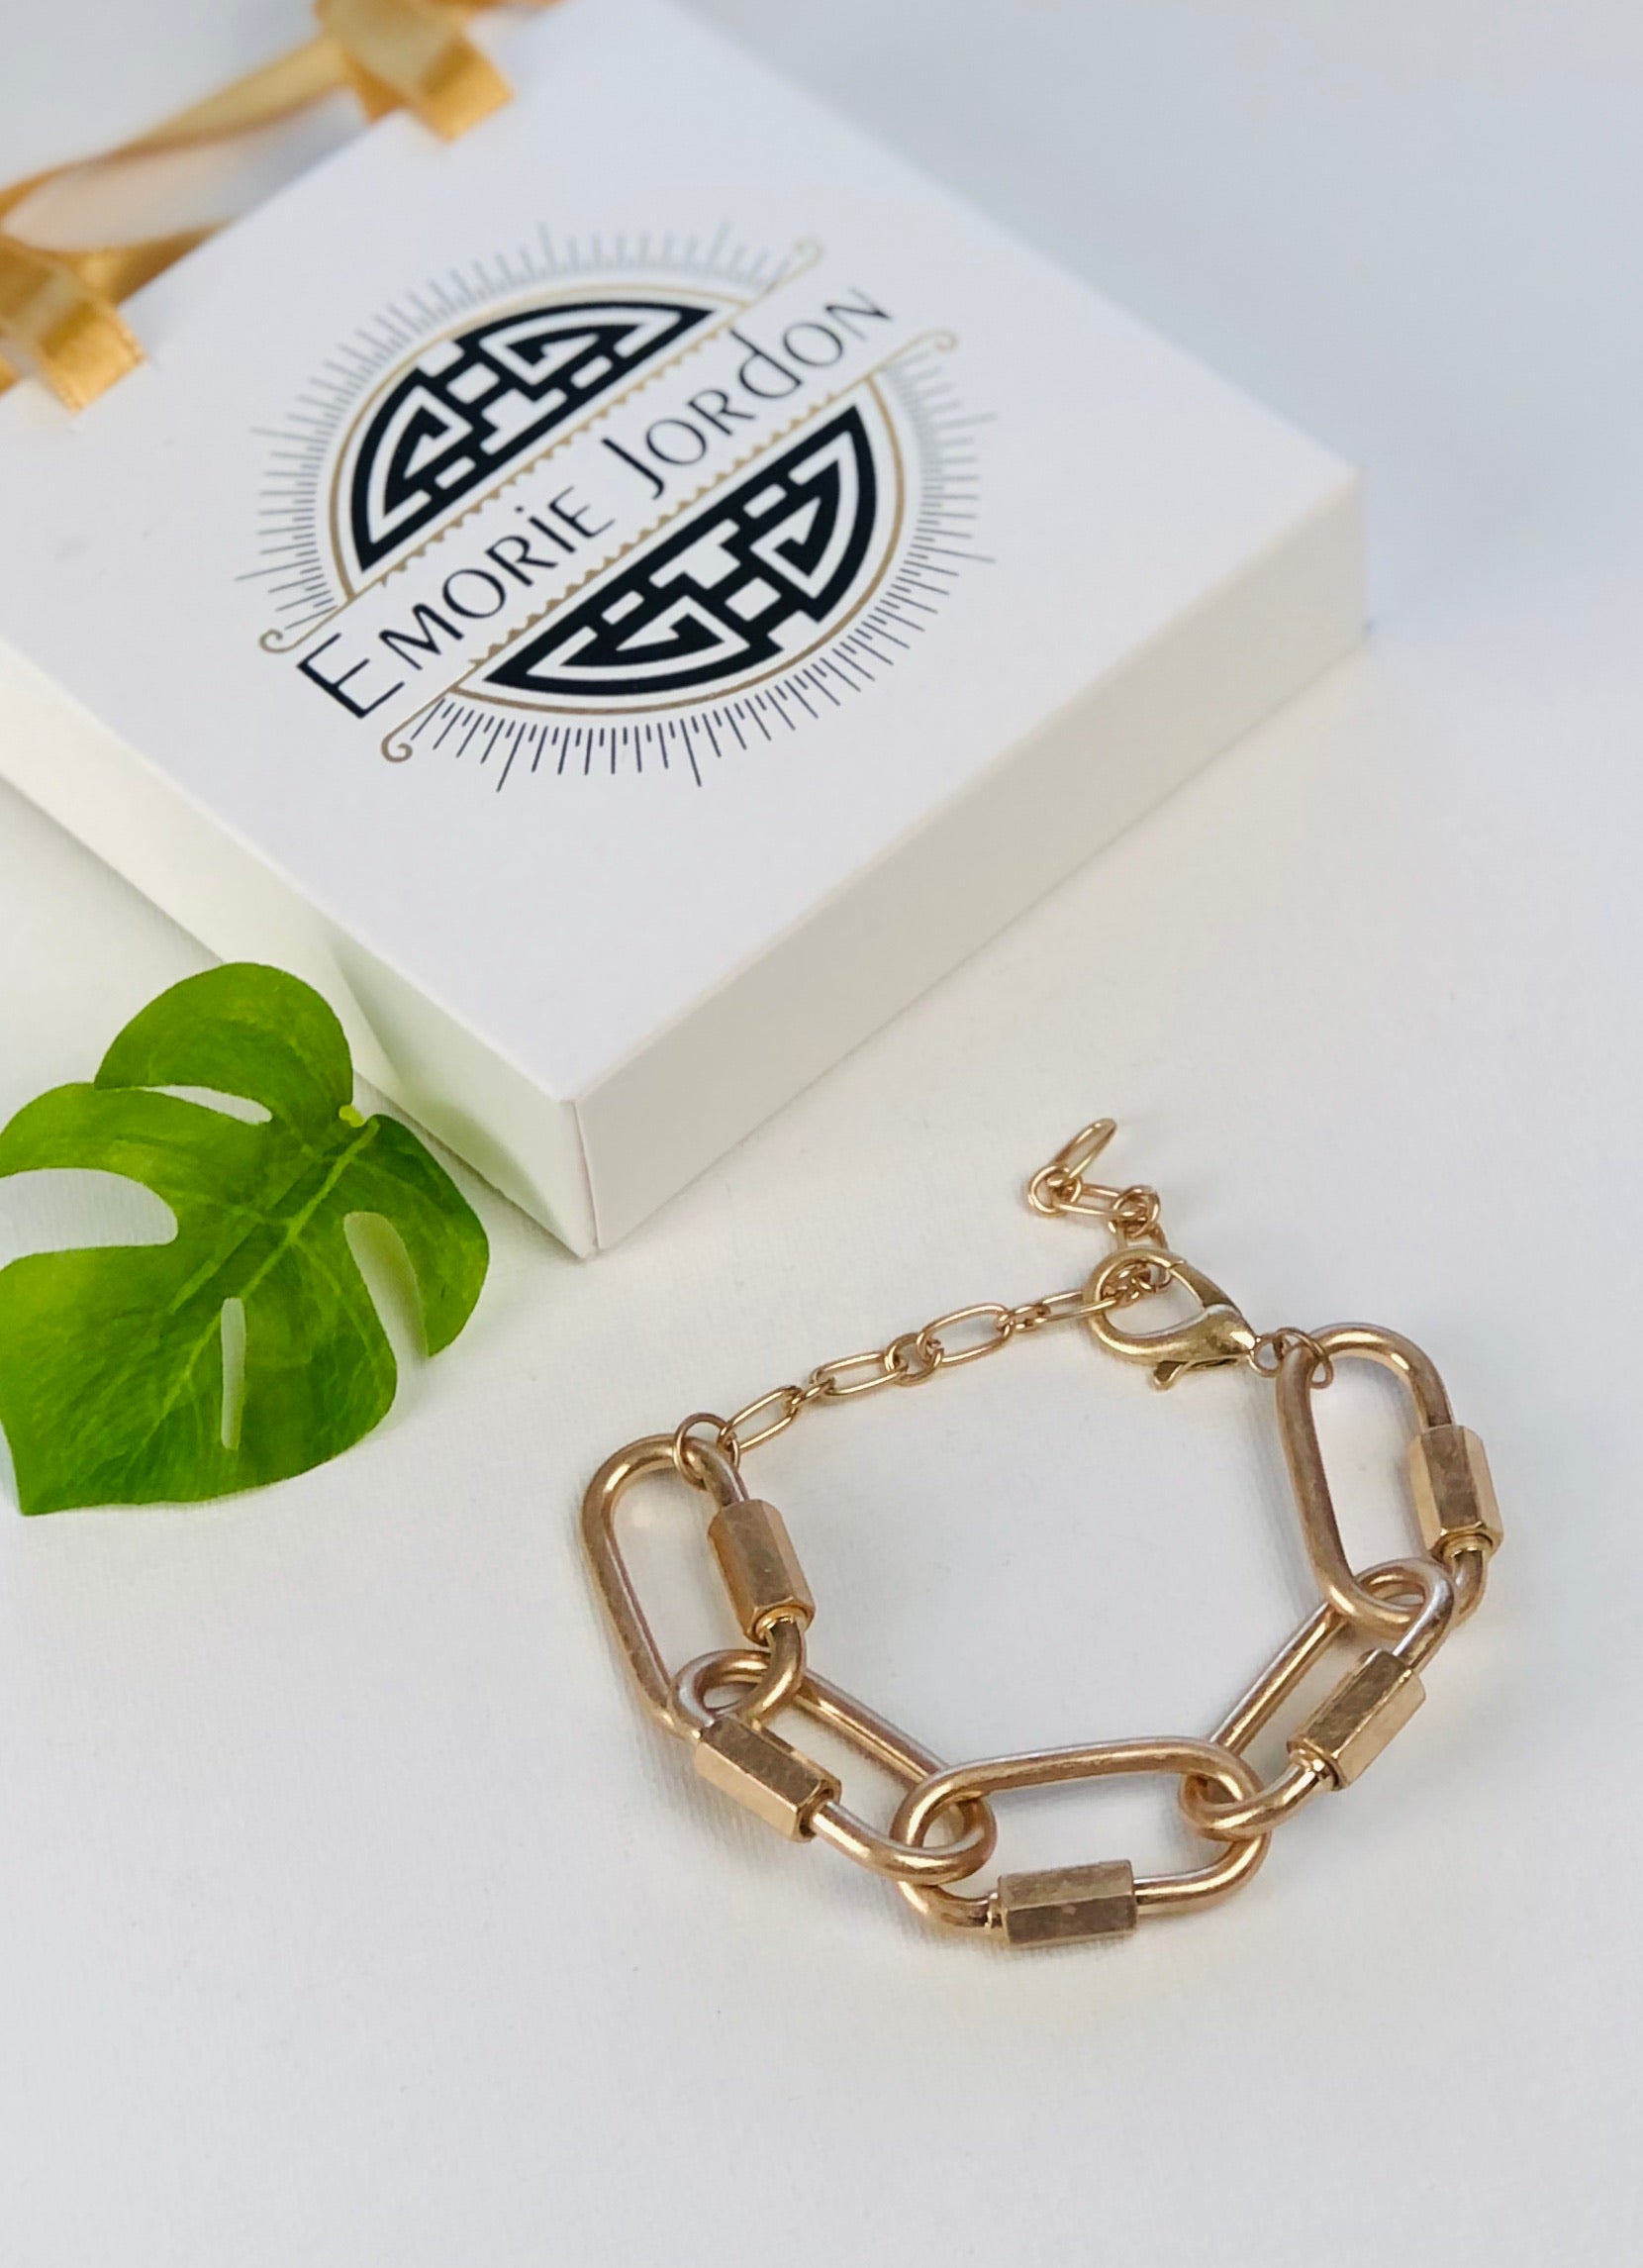 Linked Together Chain Bracelet